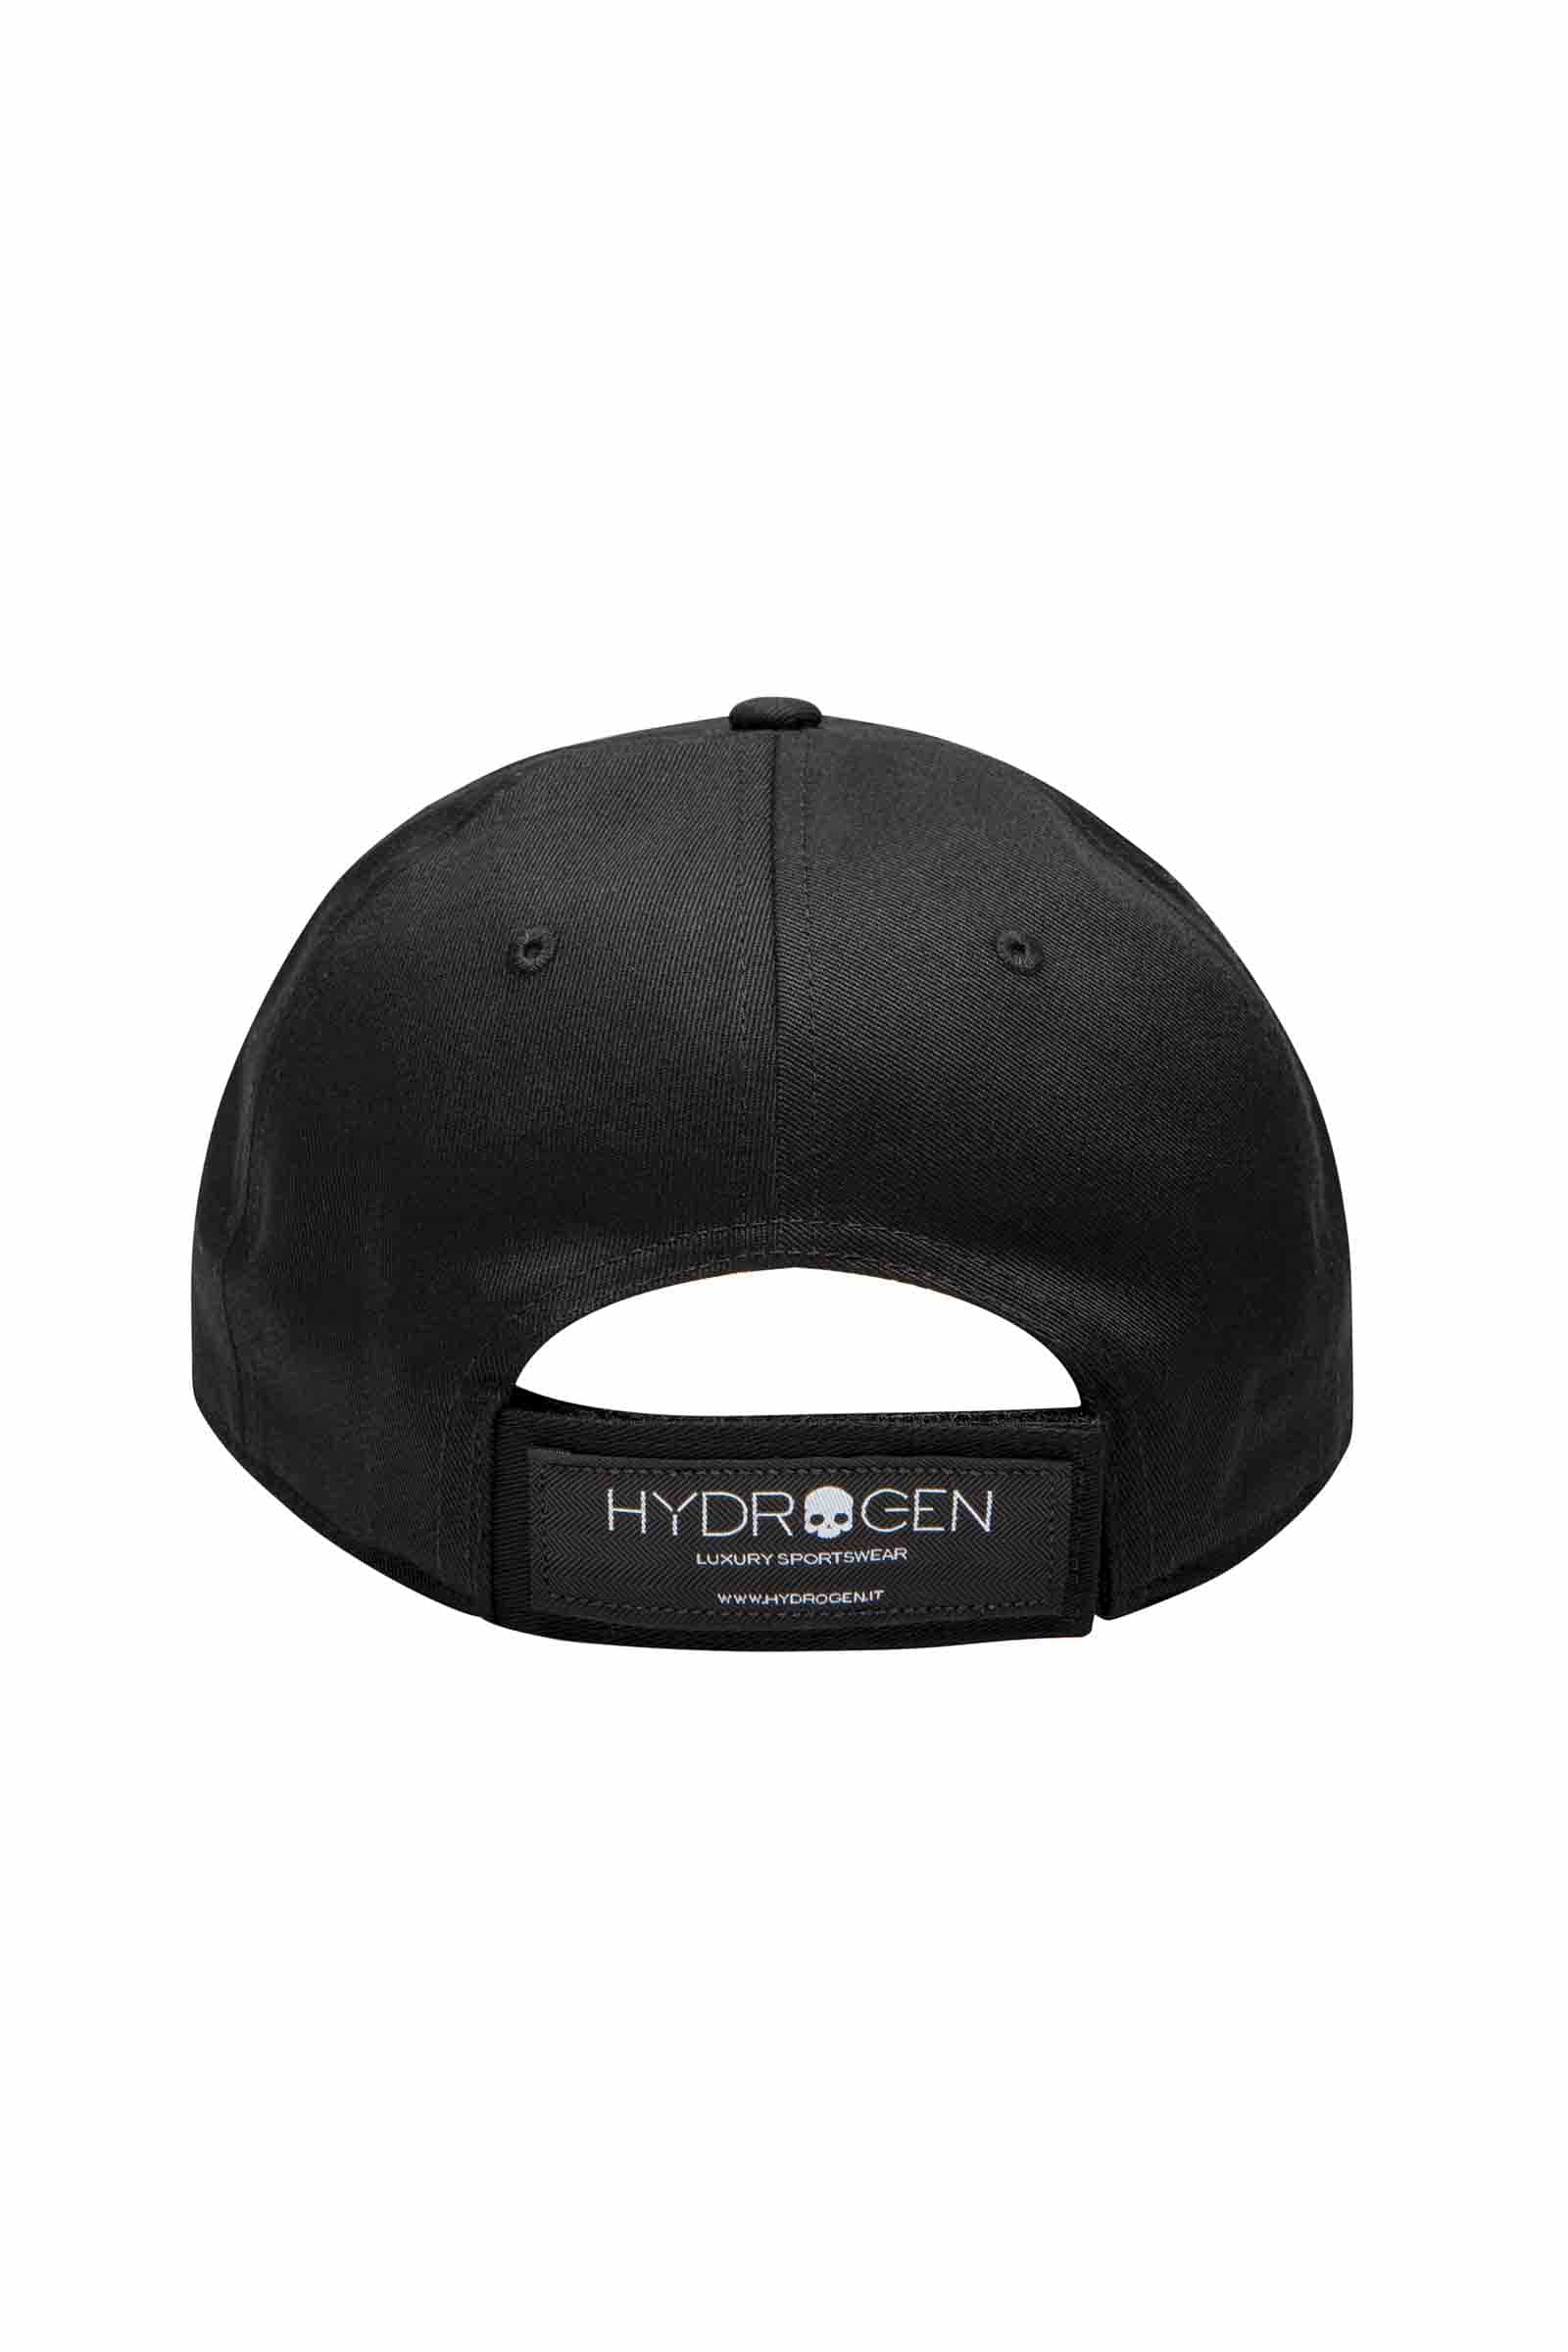 SKULL CAP - BLACK - Abbigliamento sportivo | Hydrogen